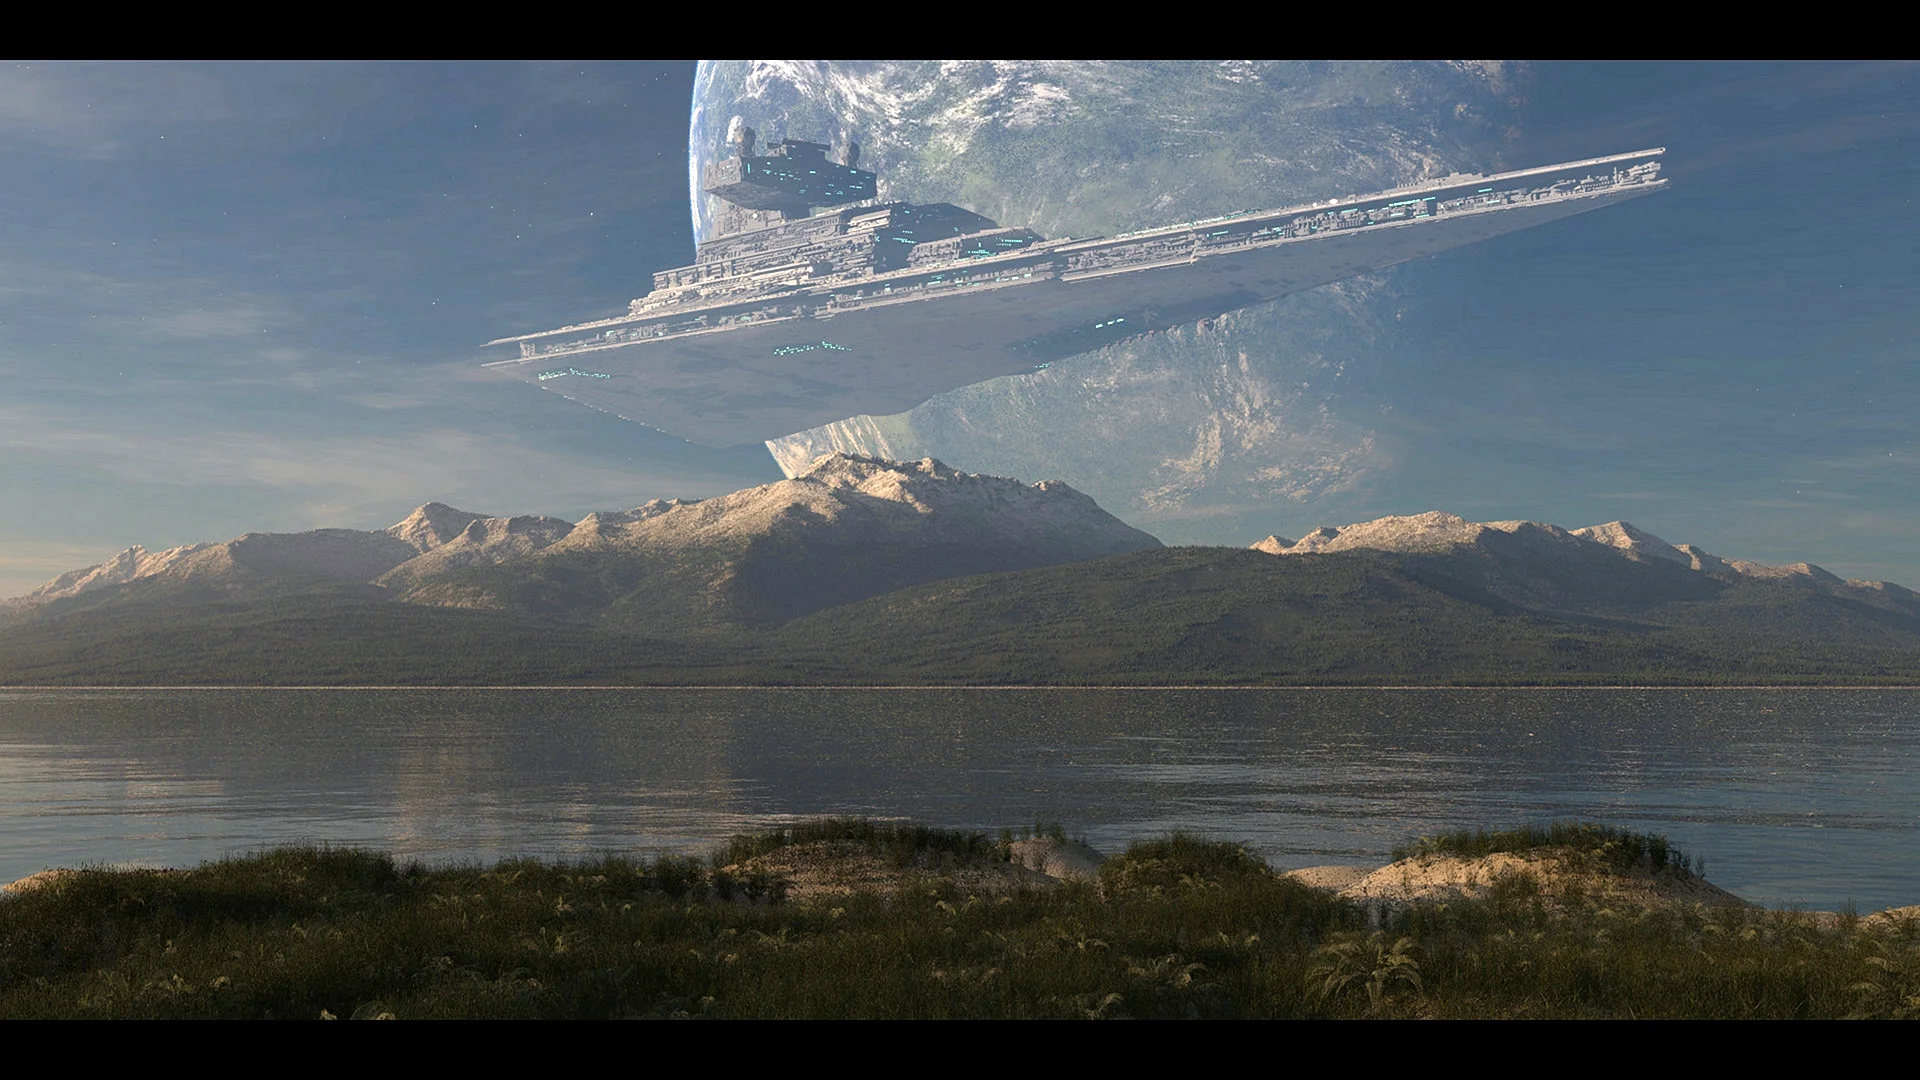 Star Wars Star Destroyer Wallpaper